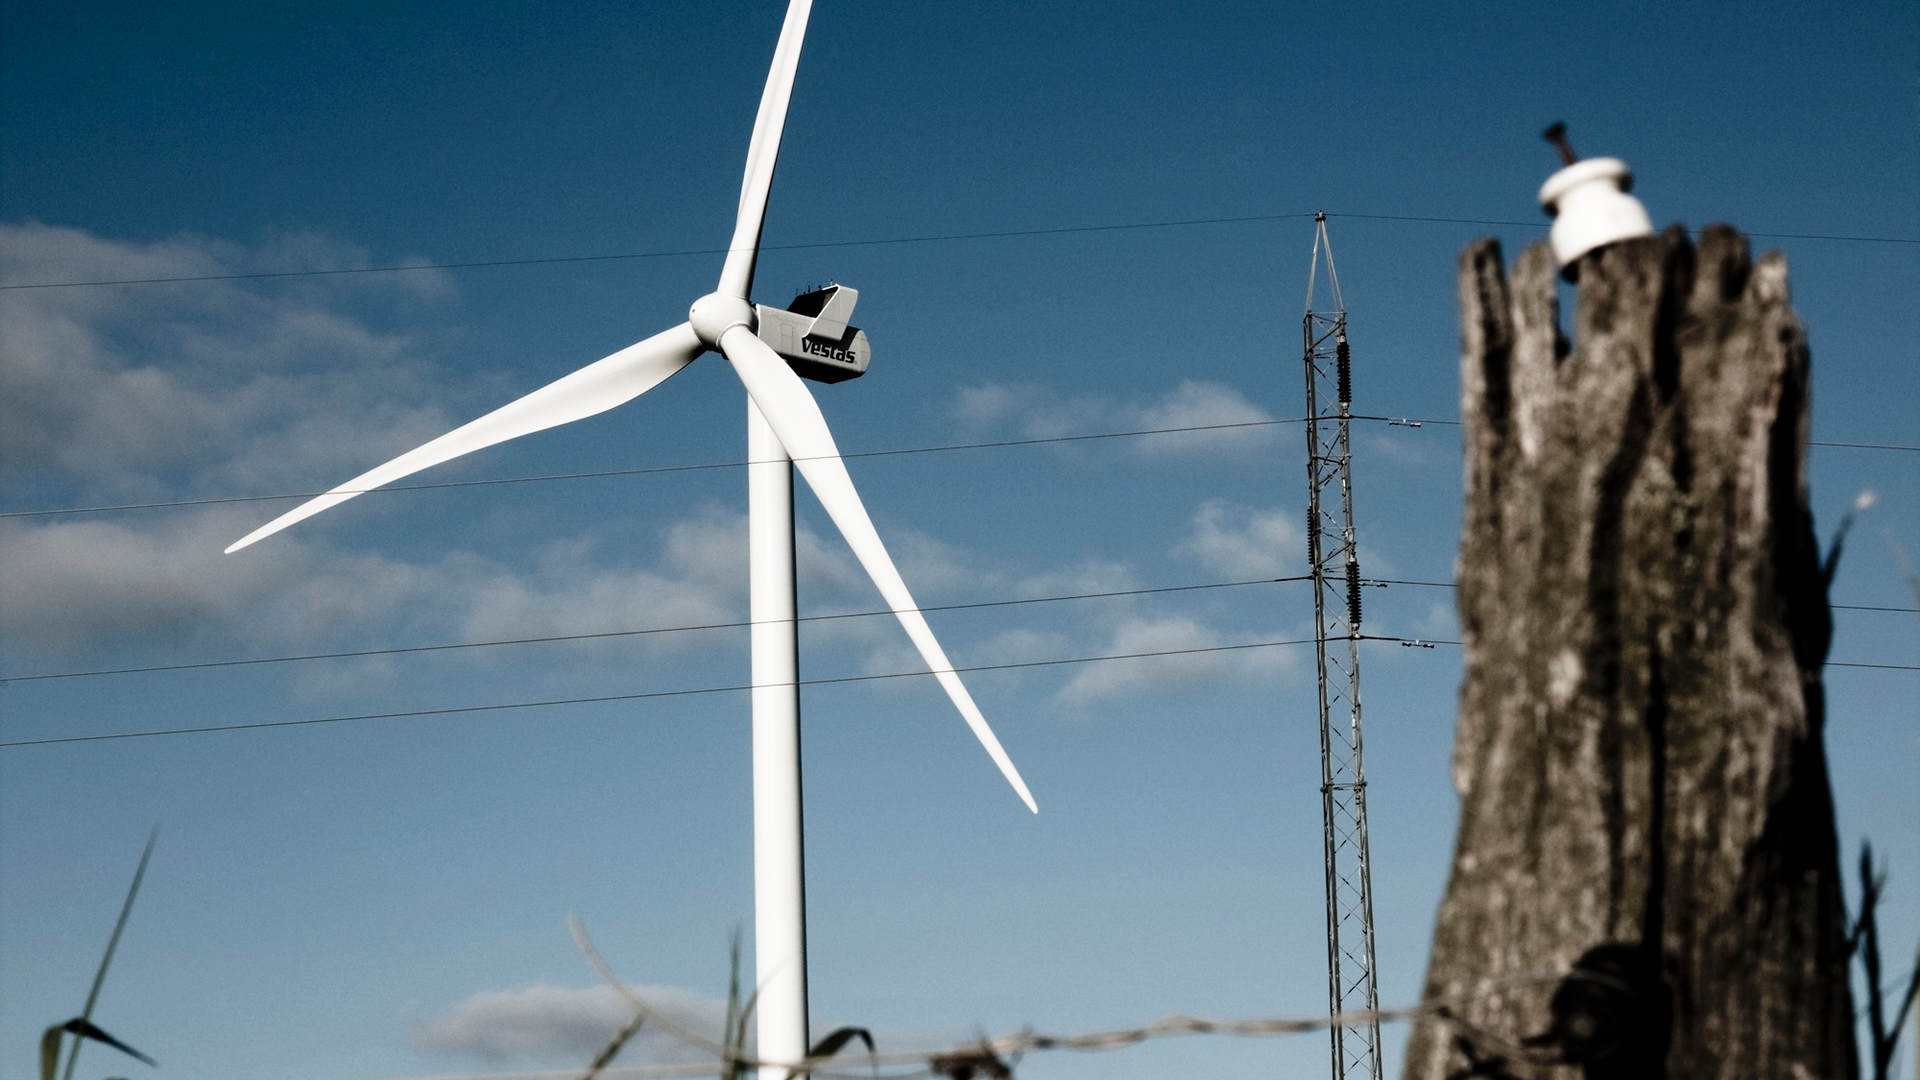 Foto: Vestas. Svenskerne har købt 33 V112-3.0 MW turbiner, som den der ses på billedet. | Foto: Vestas